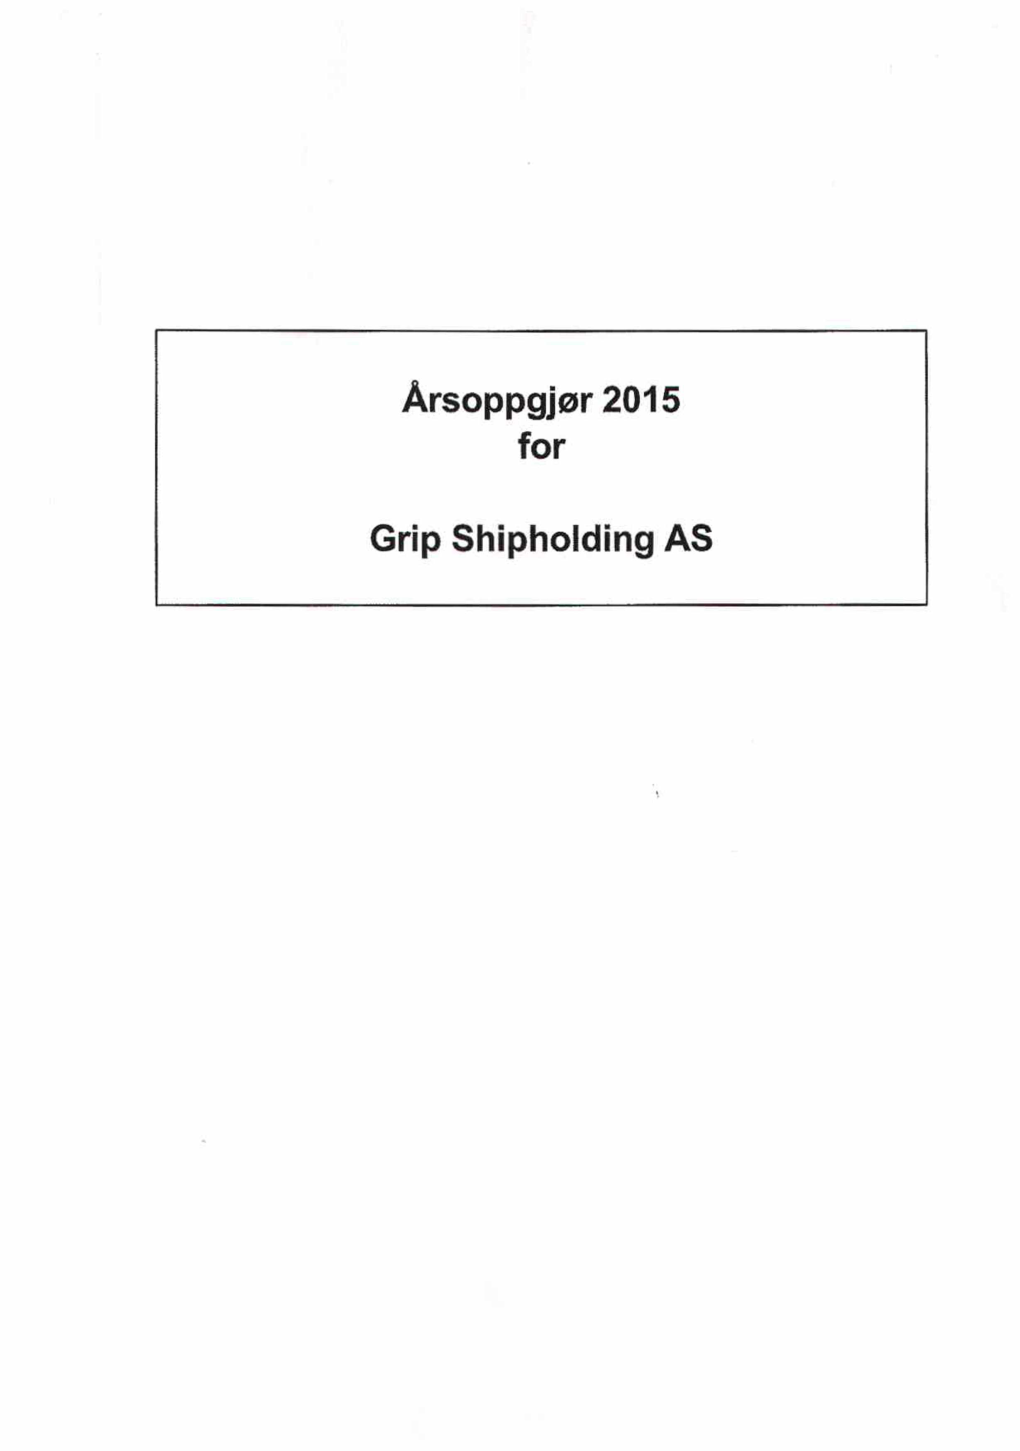 Årsoppgjør 2015 for Grip Shipholding AS